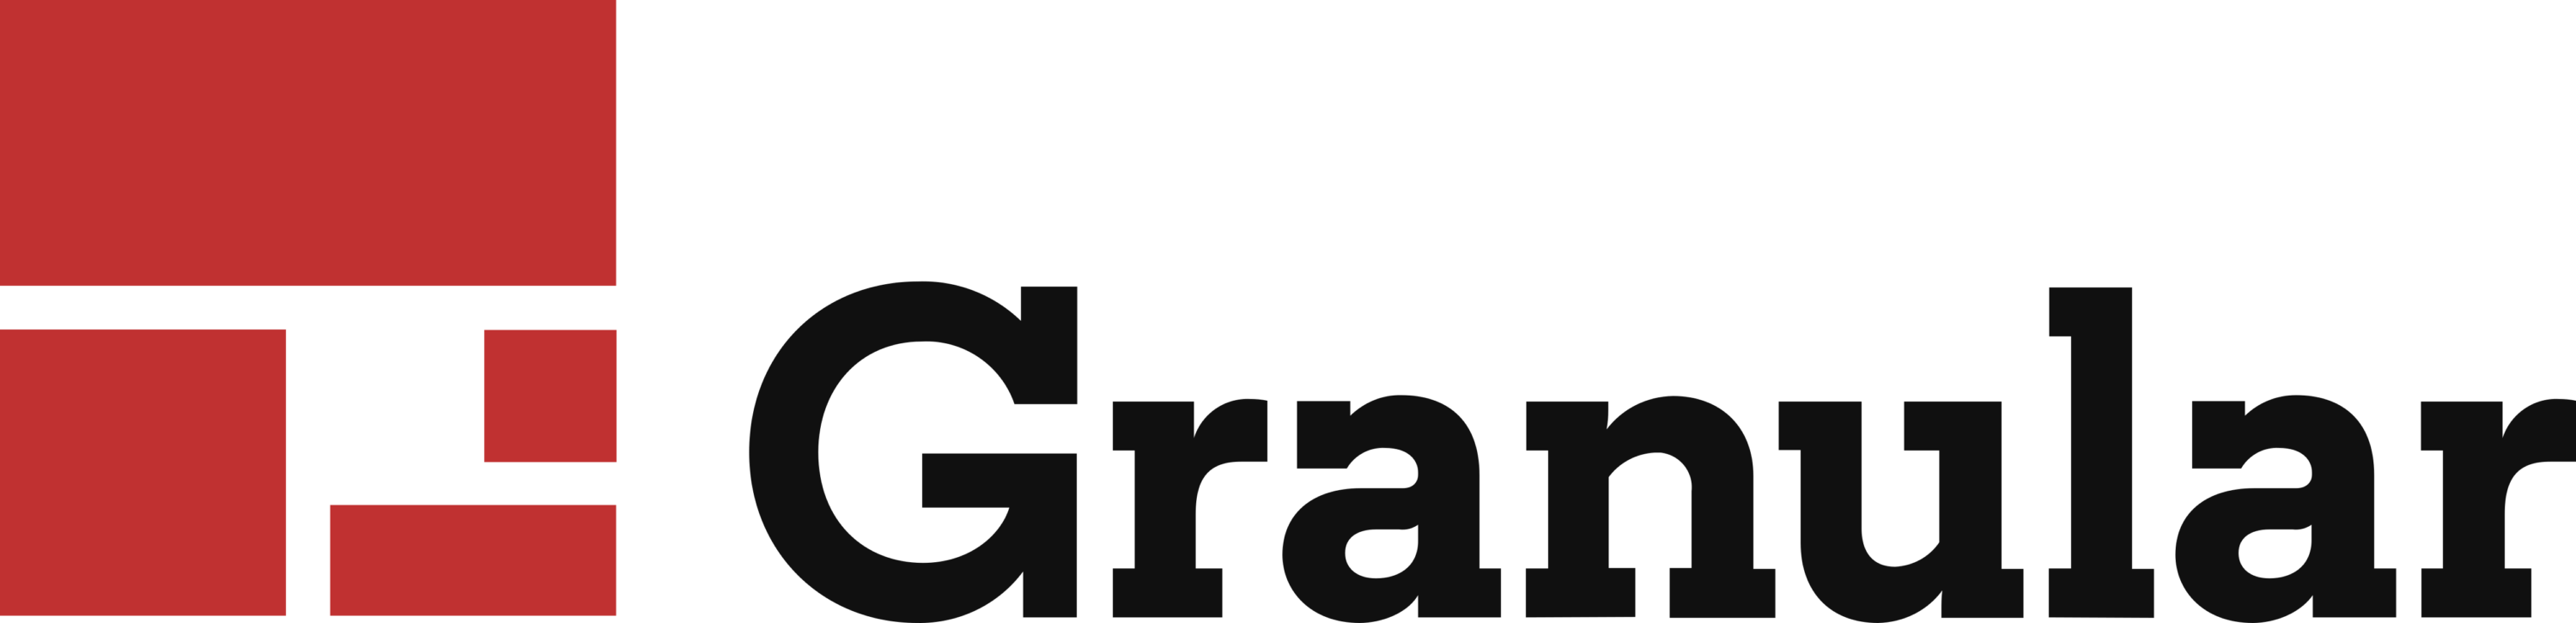 Granular Inc Logo